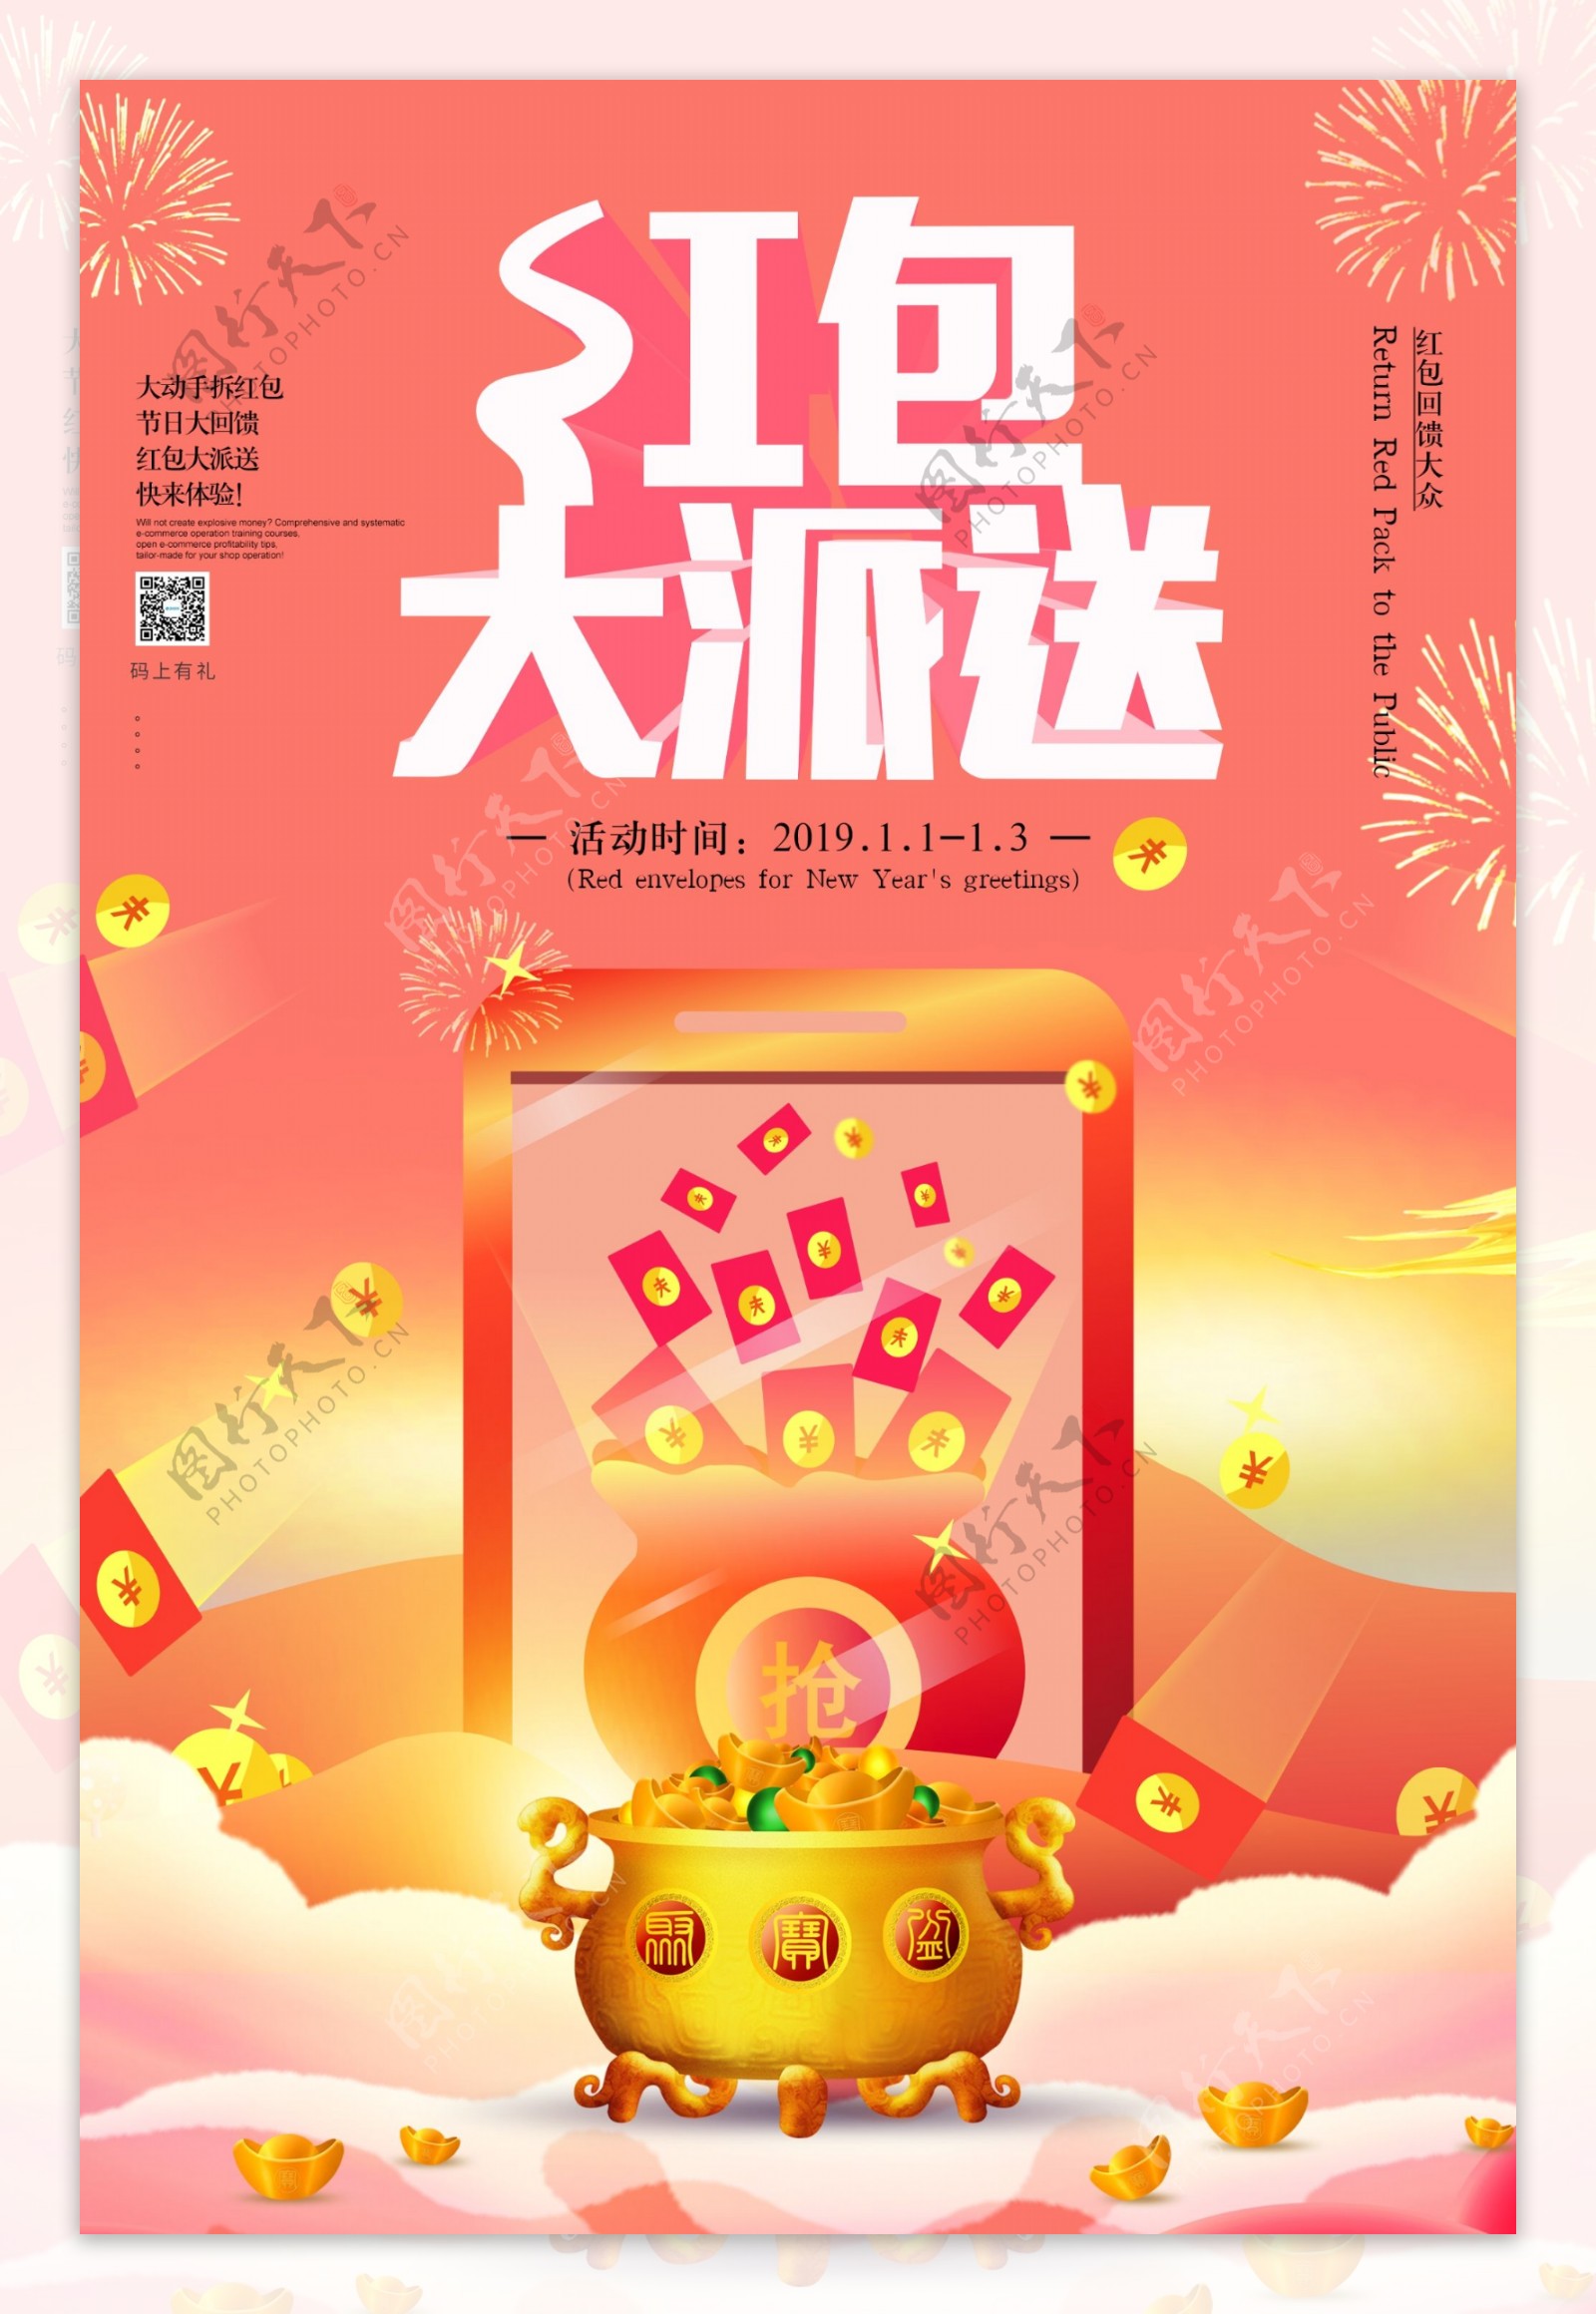 春节红包大派送海报设计